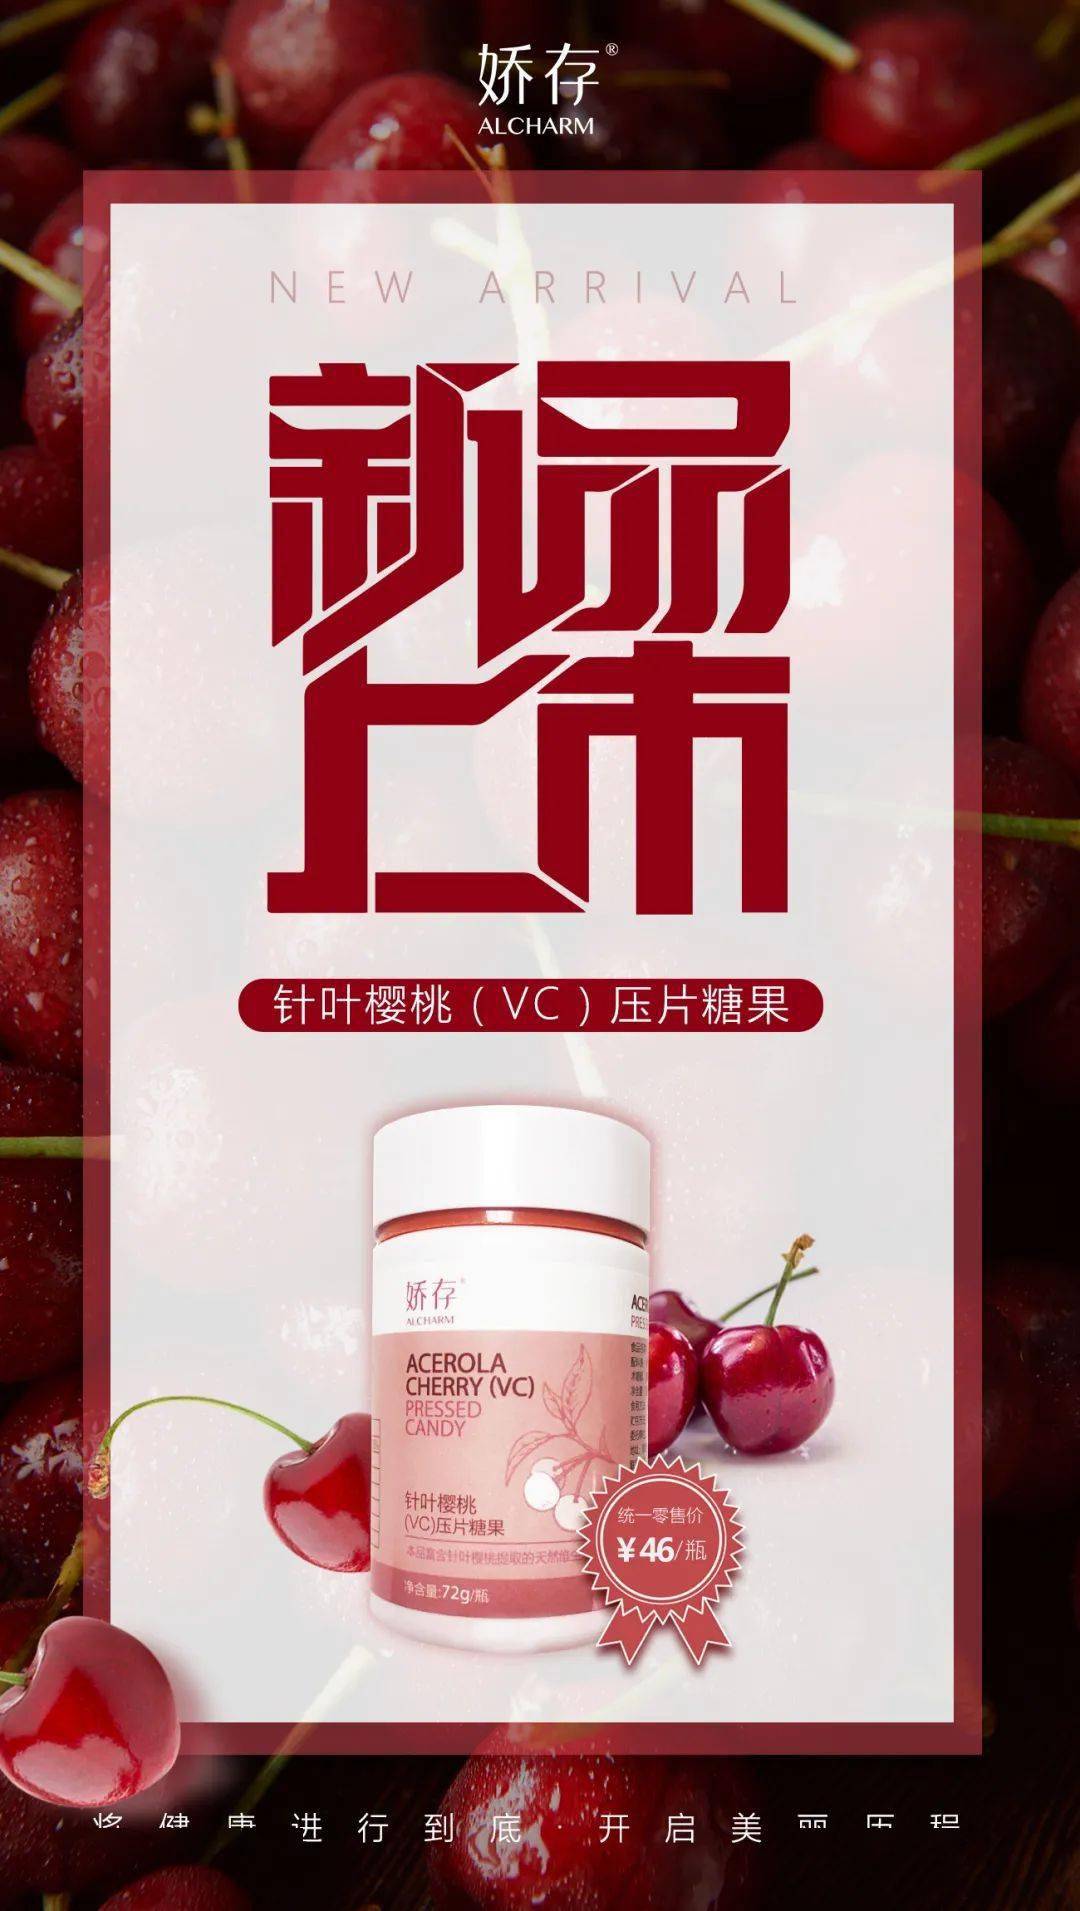 针叶樱桃(vc)压片糖果 acerola cherry (vc)  pressed candy 现 / 已